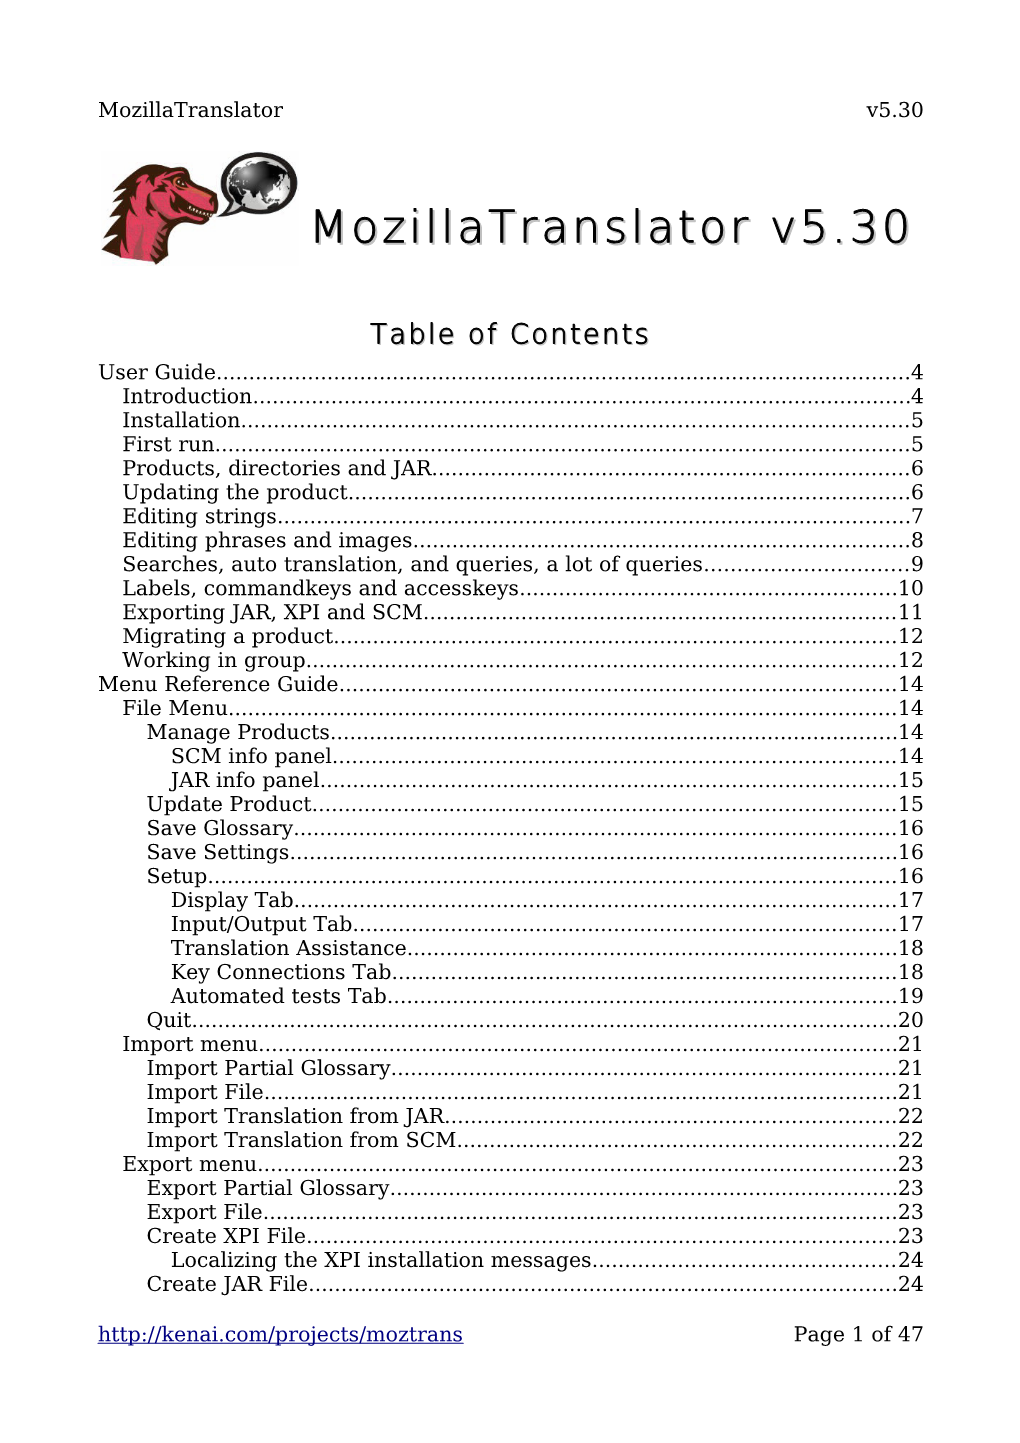 Mozillatranslator V5.30